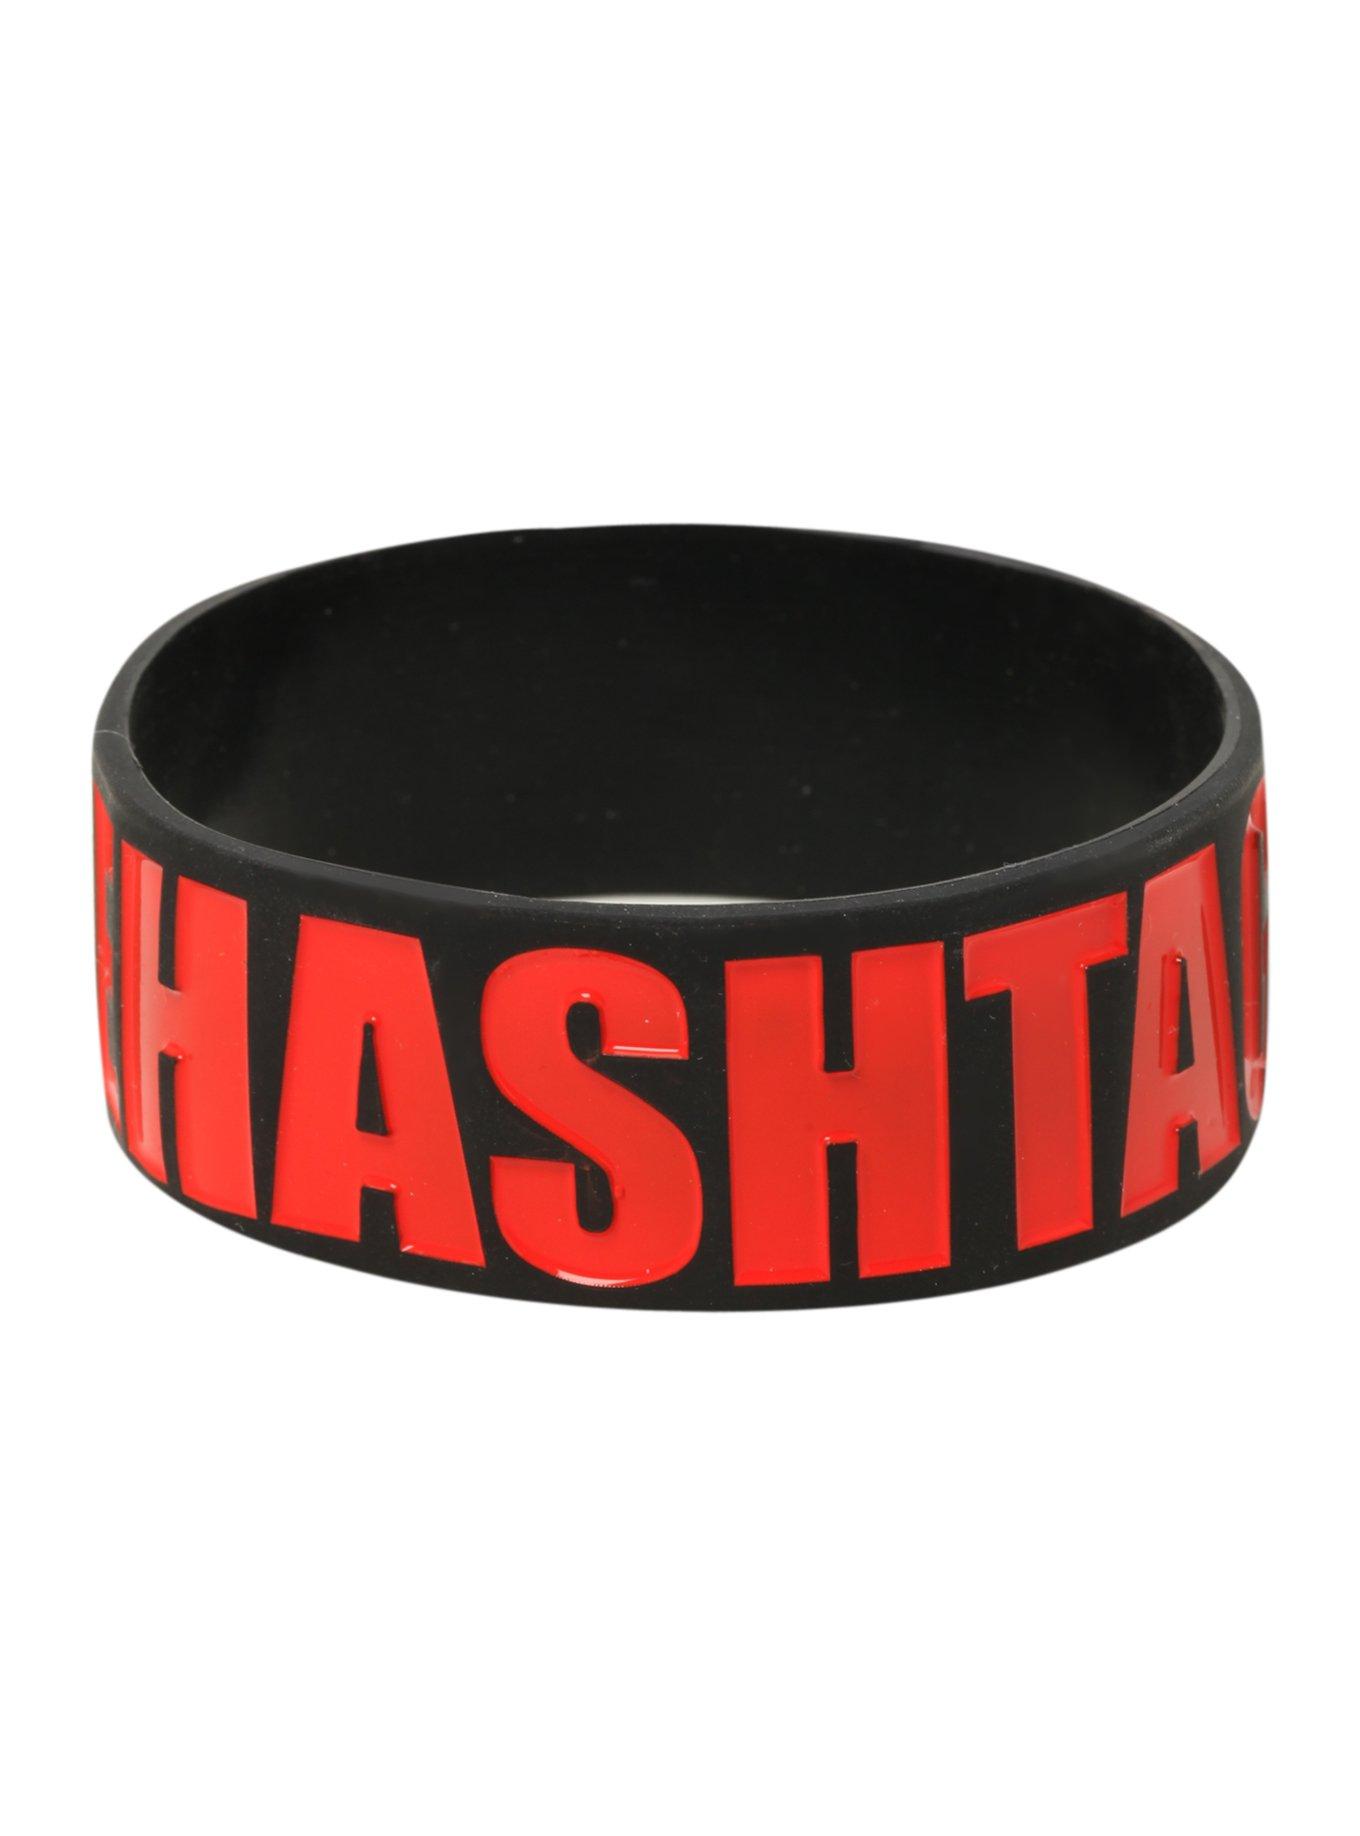 I Hate Hashtags Rubber Bracelet, , alternate